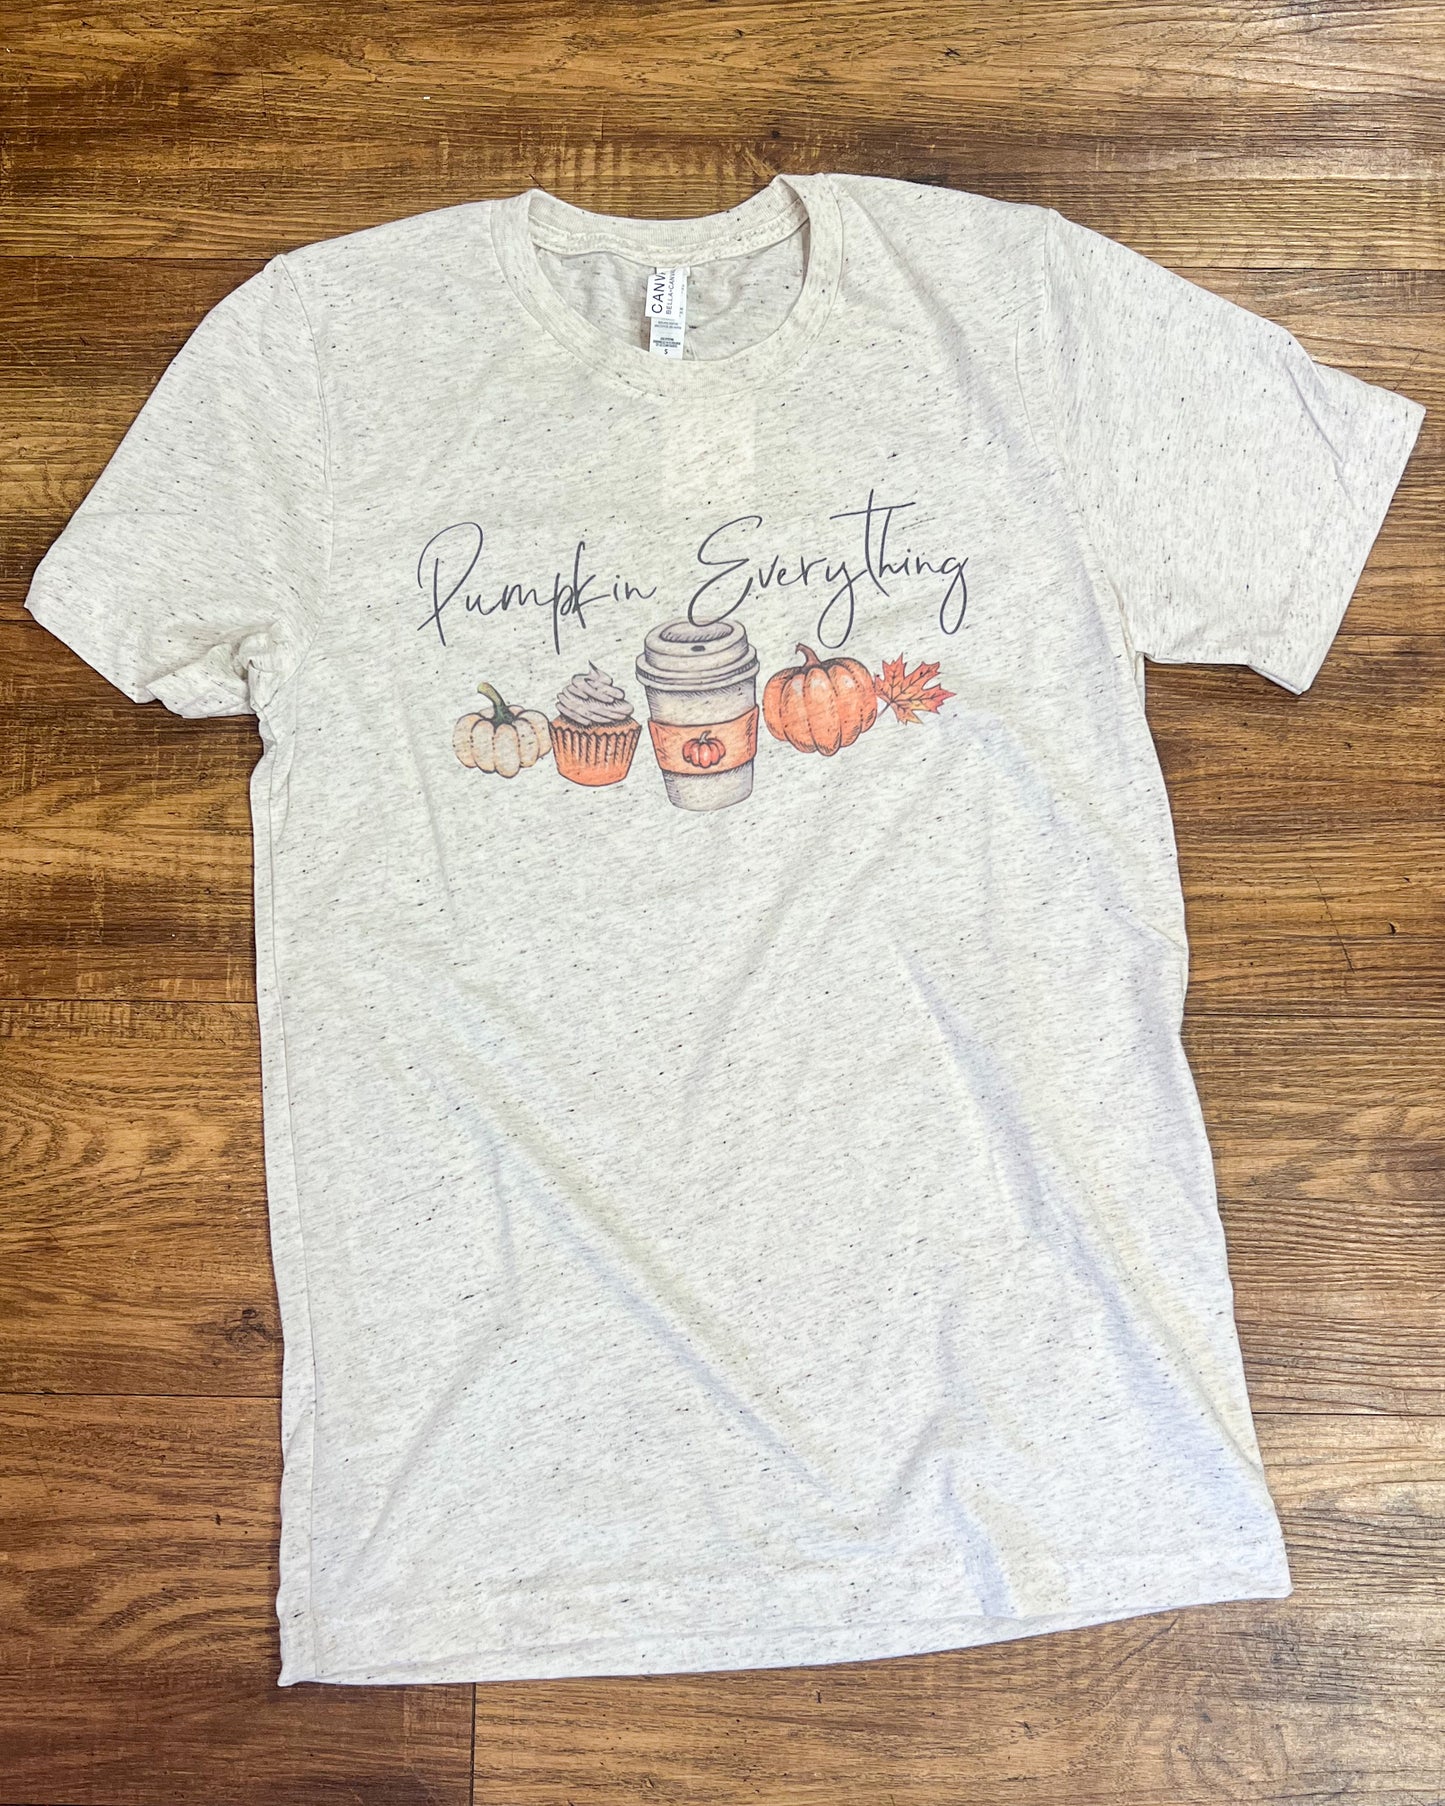 Pumpkin Everything T-Shirt